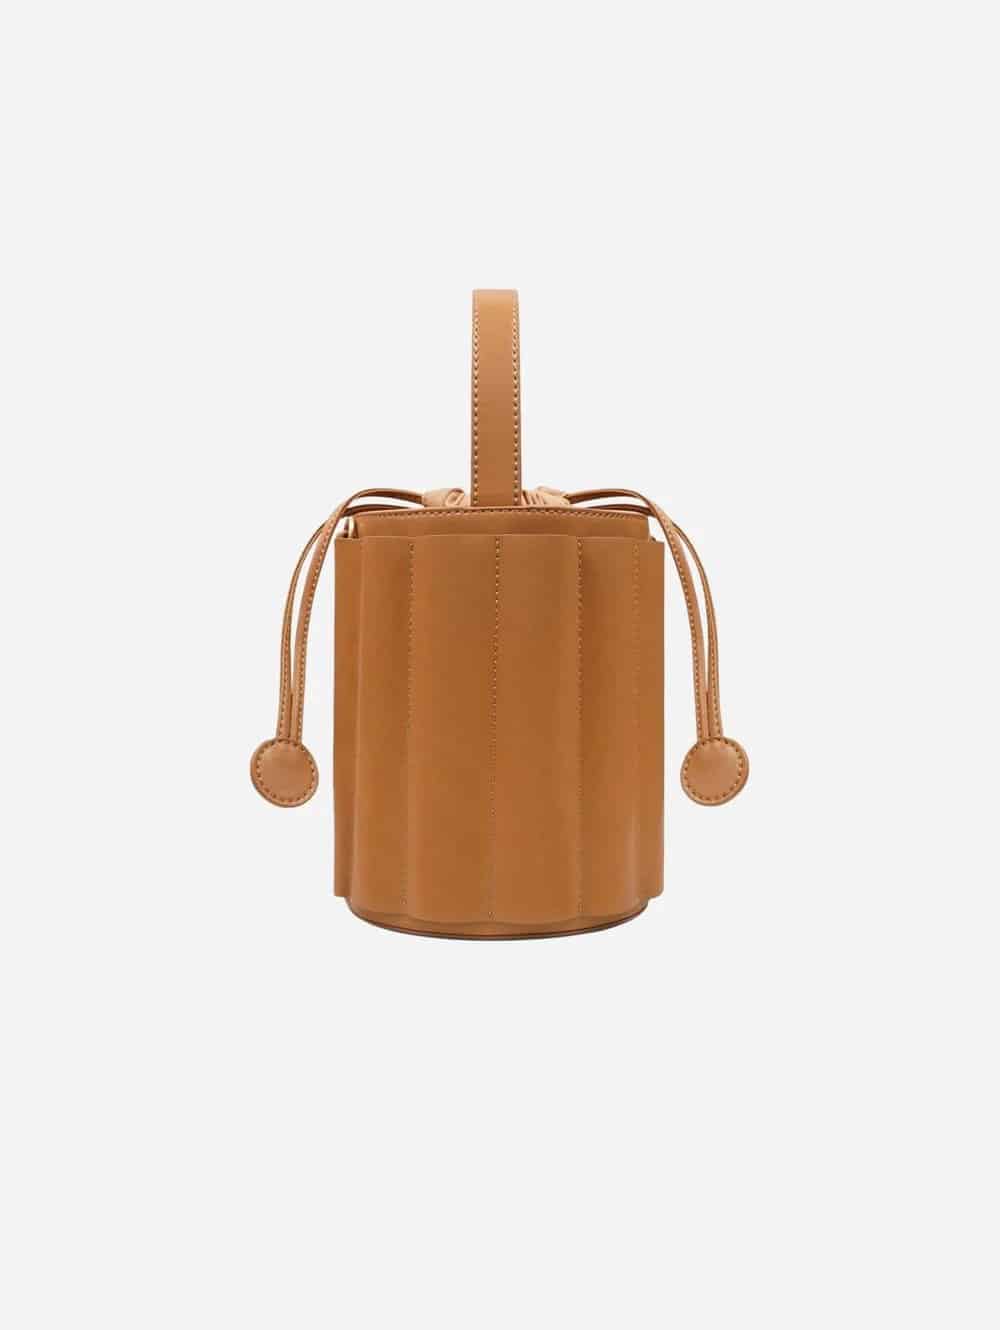 Alkeme Atelier Daphne vegan apple leather bucket bag